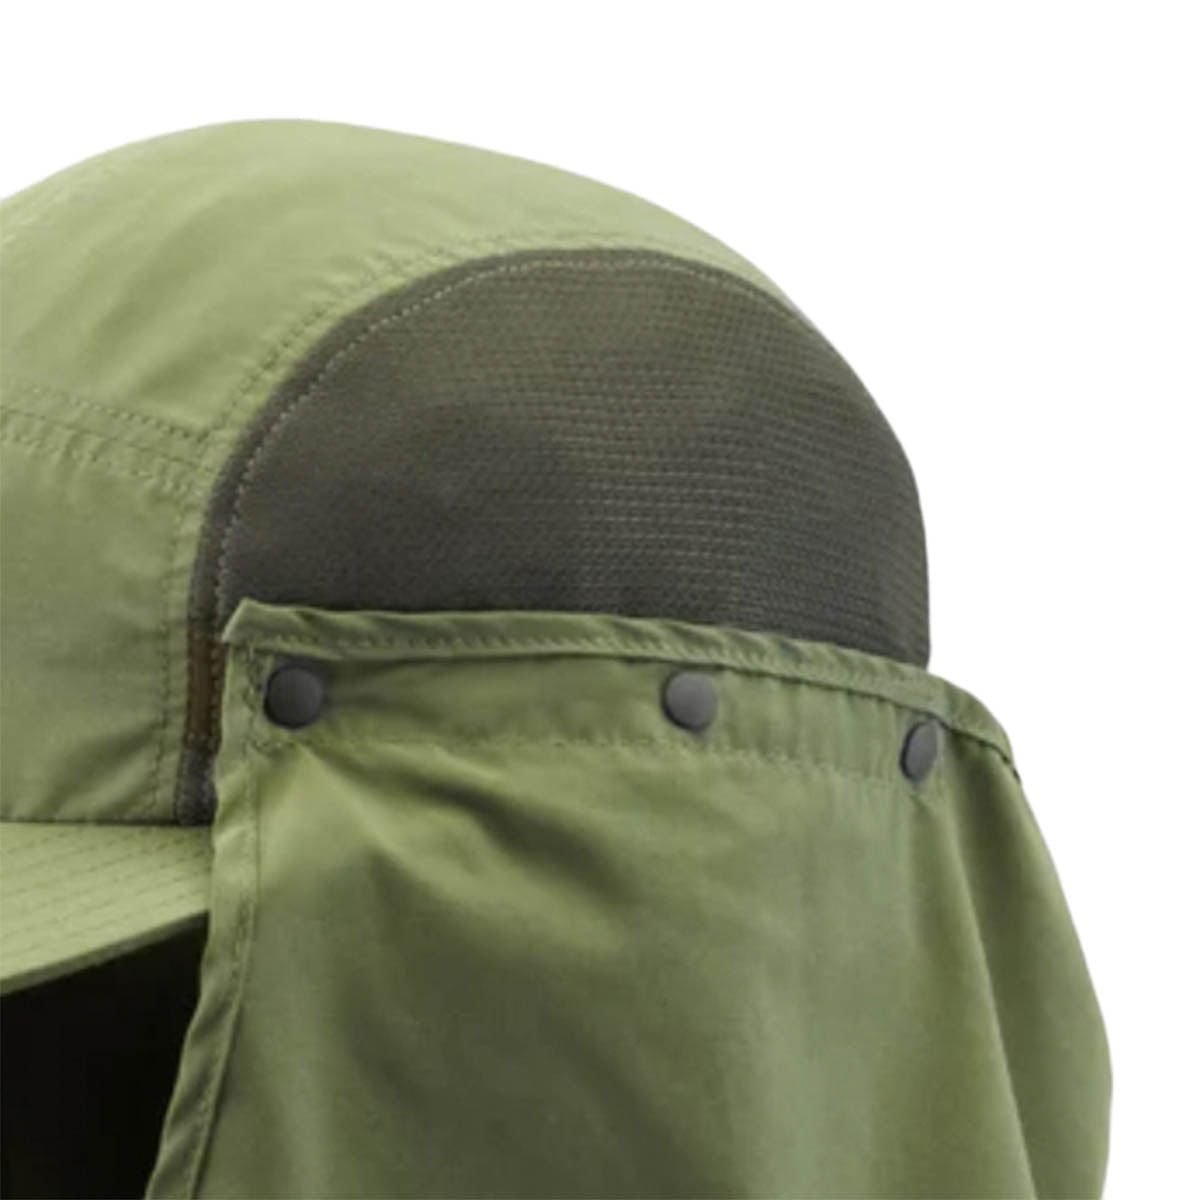 Bodega Store Accessories - HATS - Misc Hat OLIVE DRAB / O/S FATIGUE / EC-CAP